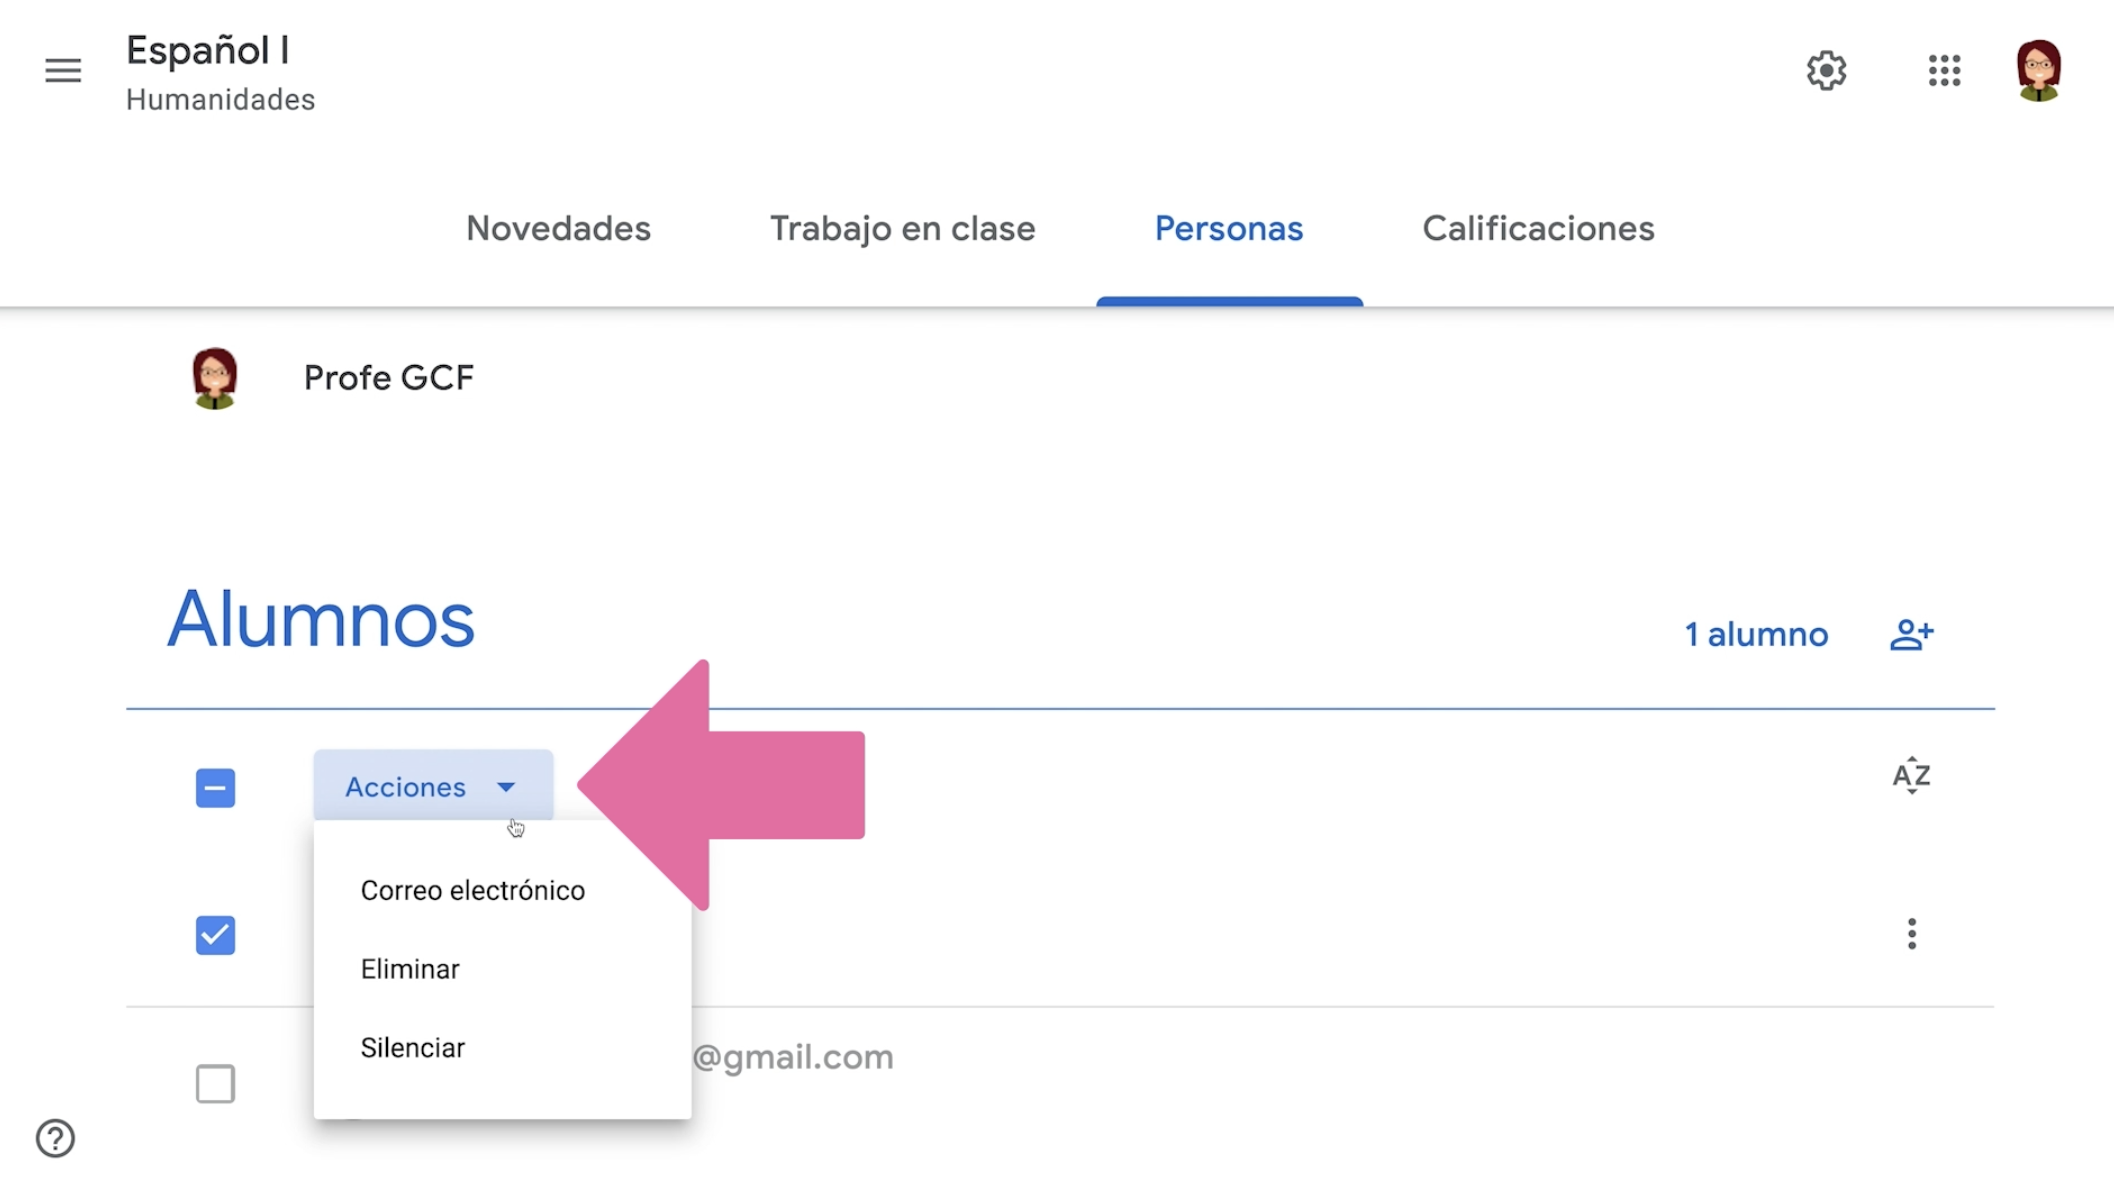 Hacer clic en botón Acciones para ver las opciones disponibles a realizar en pestaña Personas de Google Classroom.